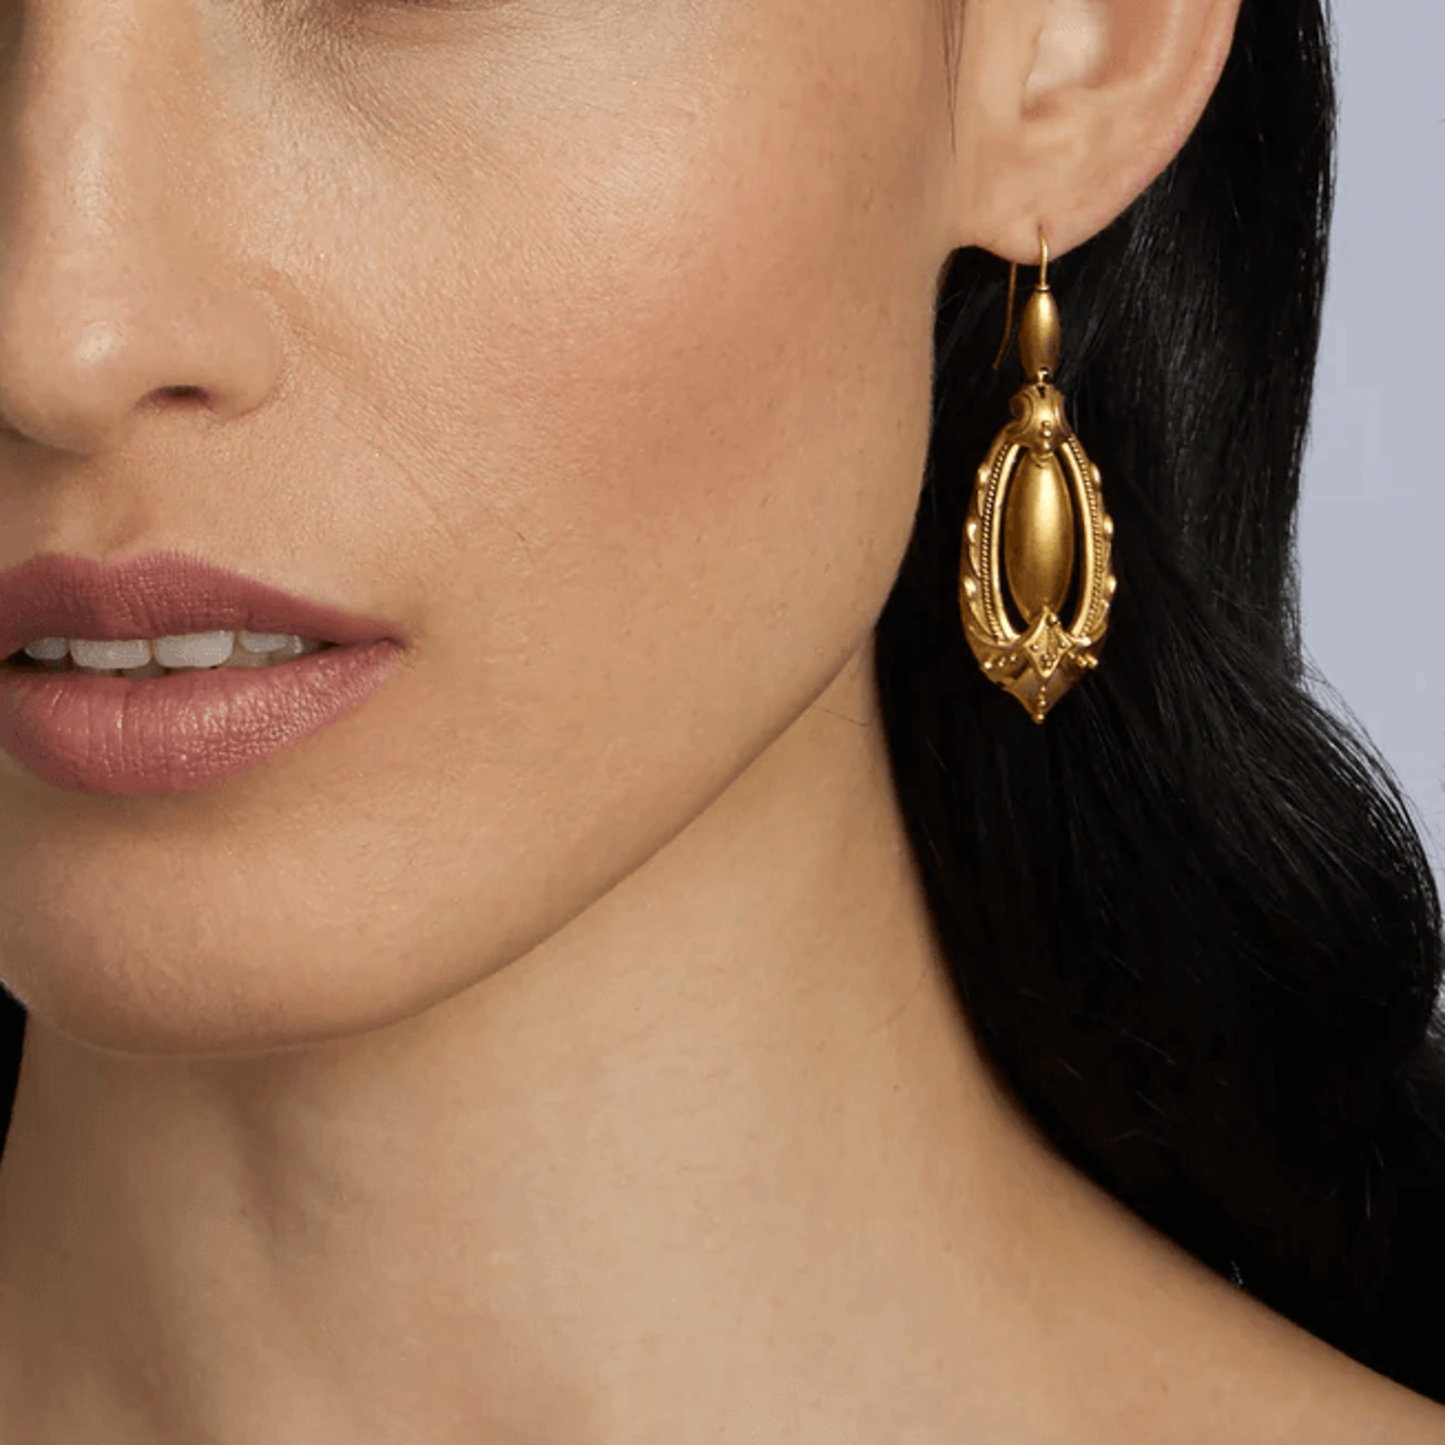 Victorian 15KT Yellow Gold Earrings on ear